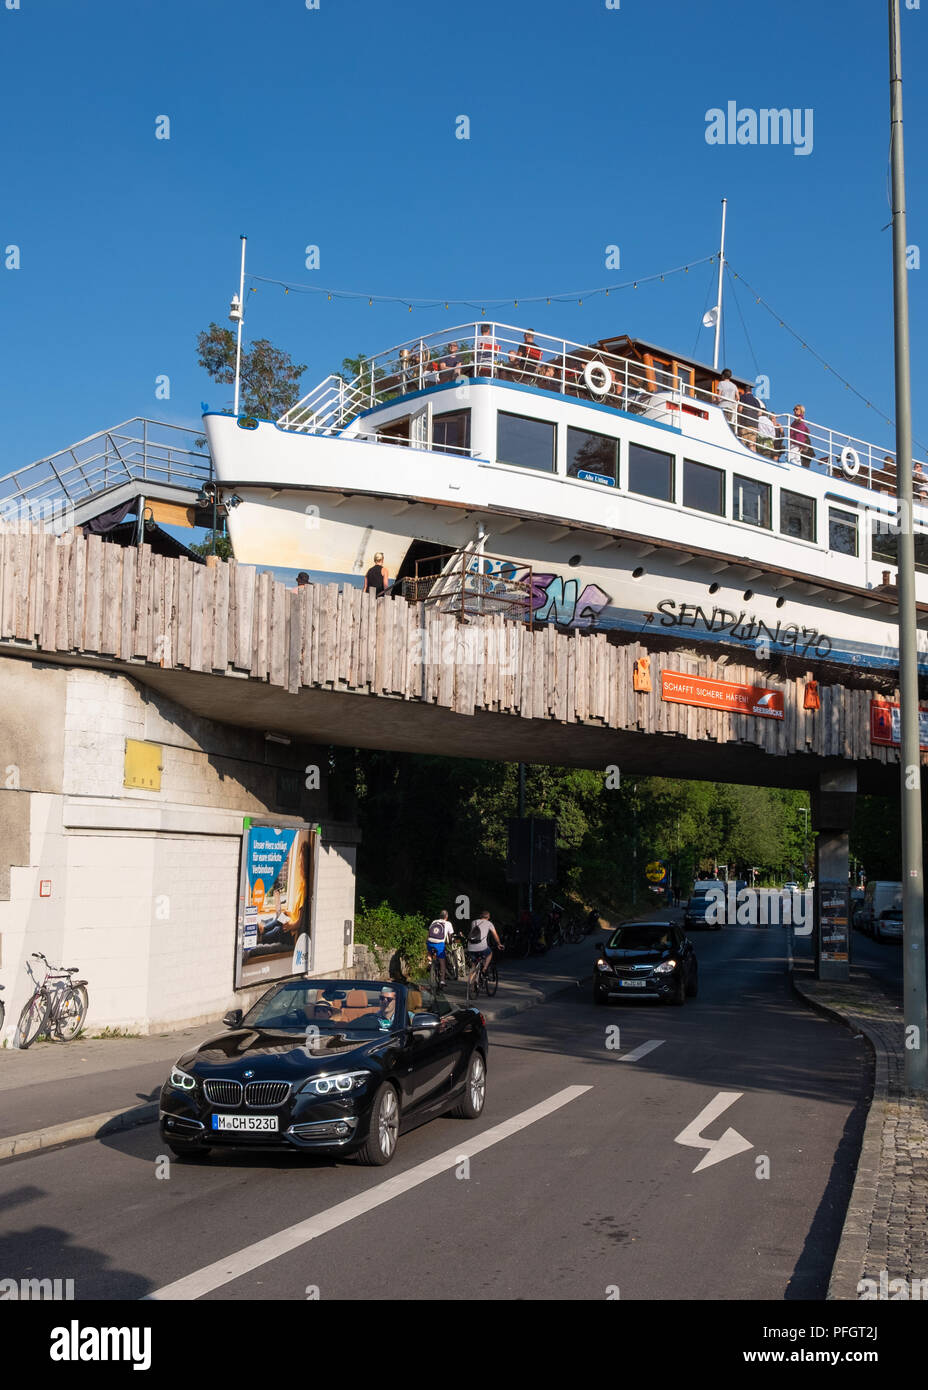 Alte Utting, ex nave passeggeri convertito in un ristorante ora collocato su un ponte ferroviario a Monaco di Baviera, Germania. Foto Stock